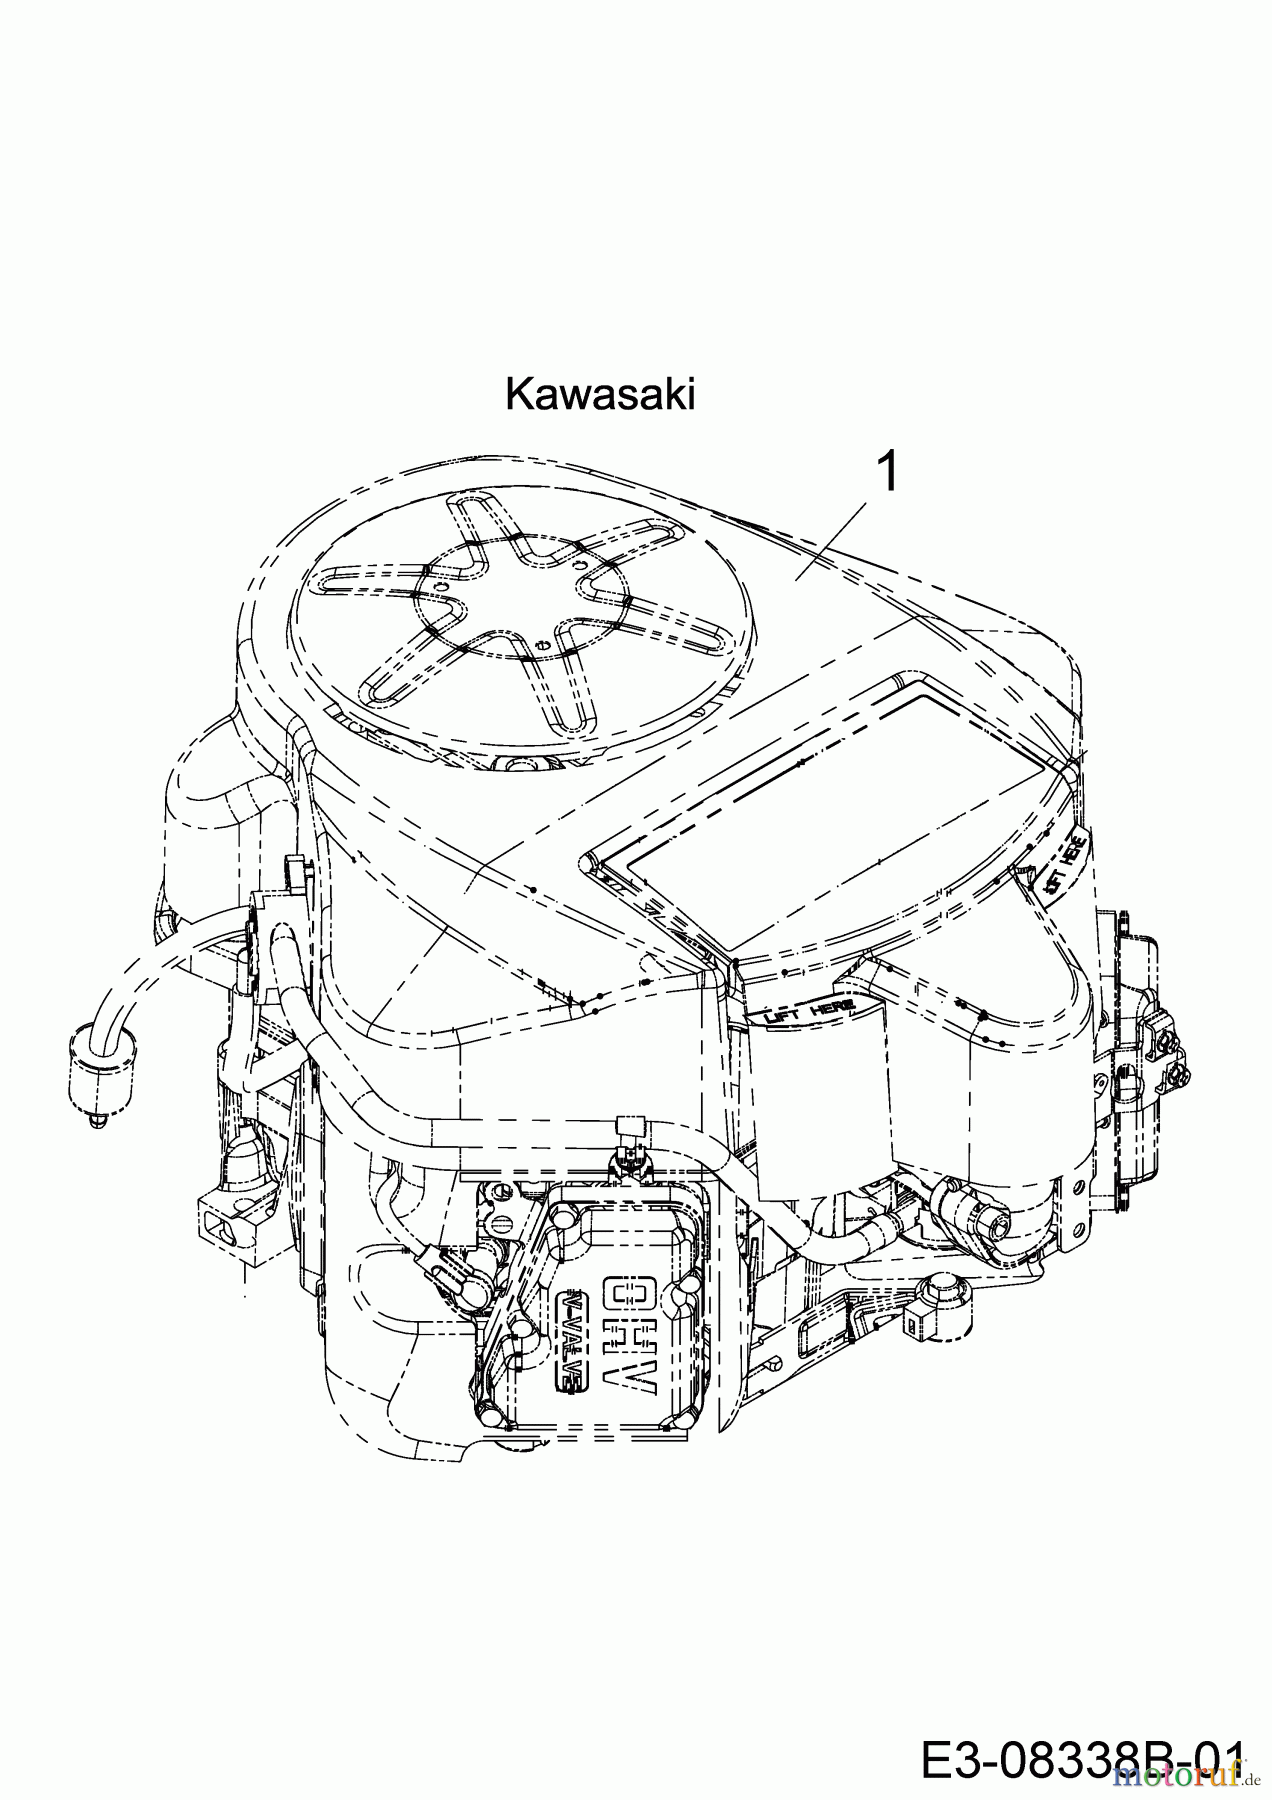  Black Edition Lawn tractors 285-106 TWIN KH 13AFA1KR615  (2021) Engine Kawasaki